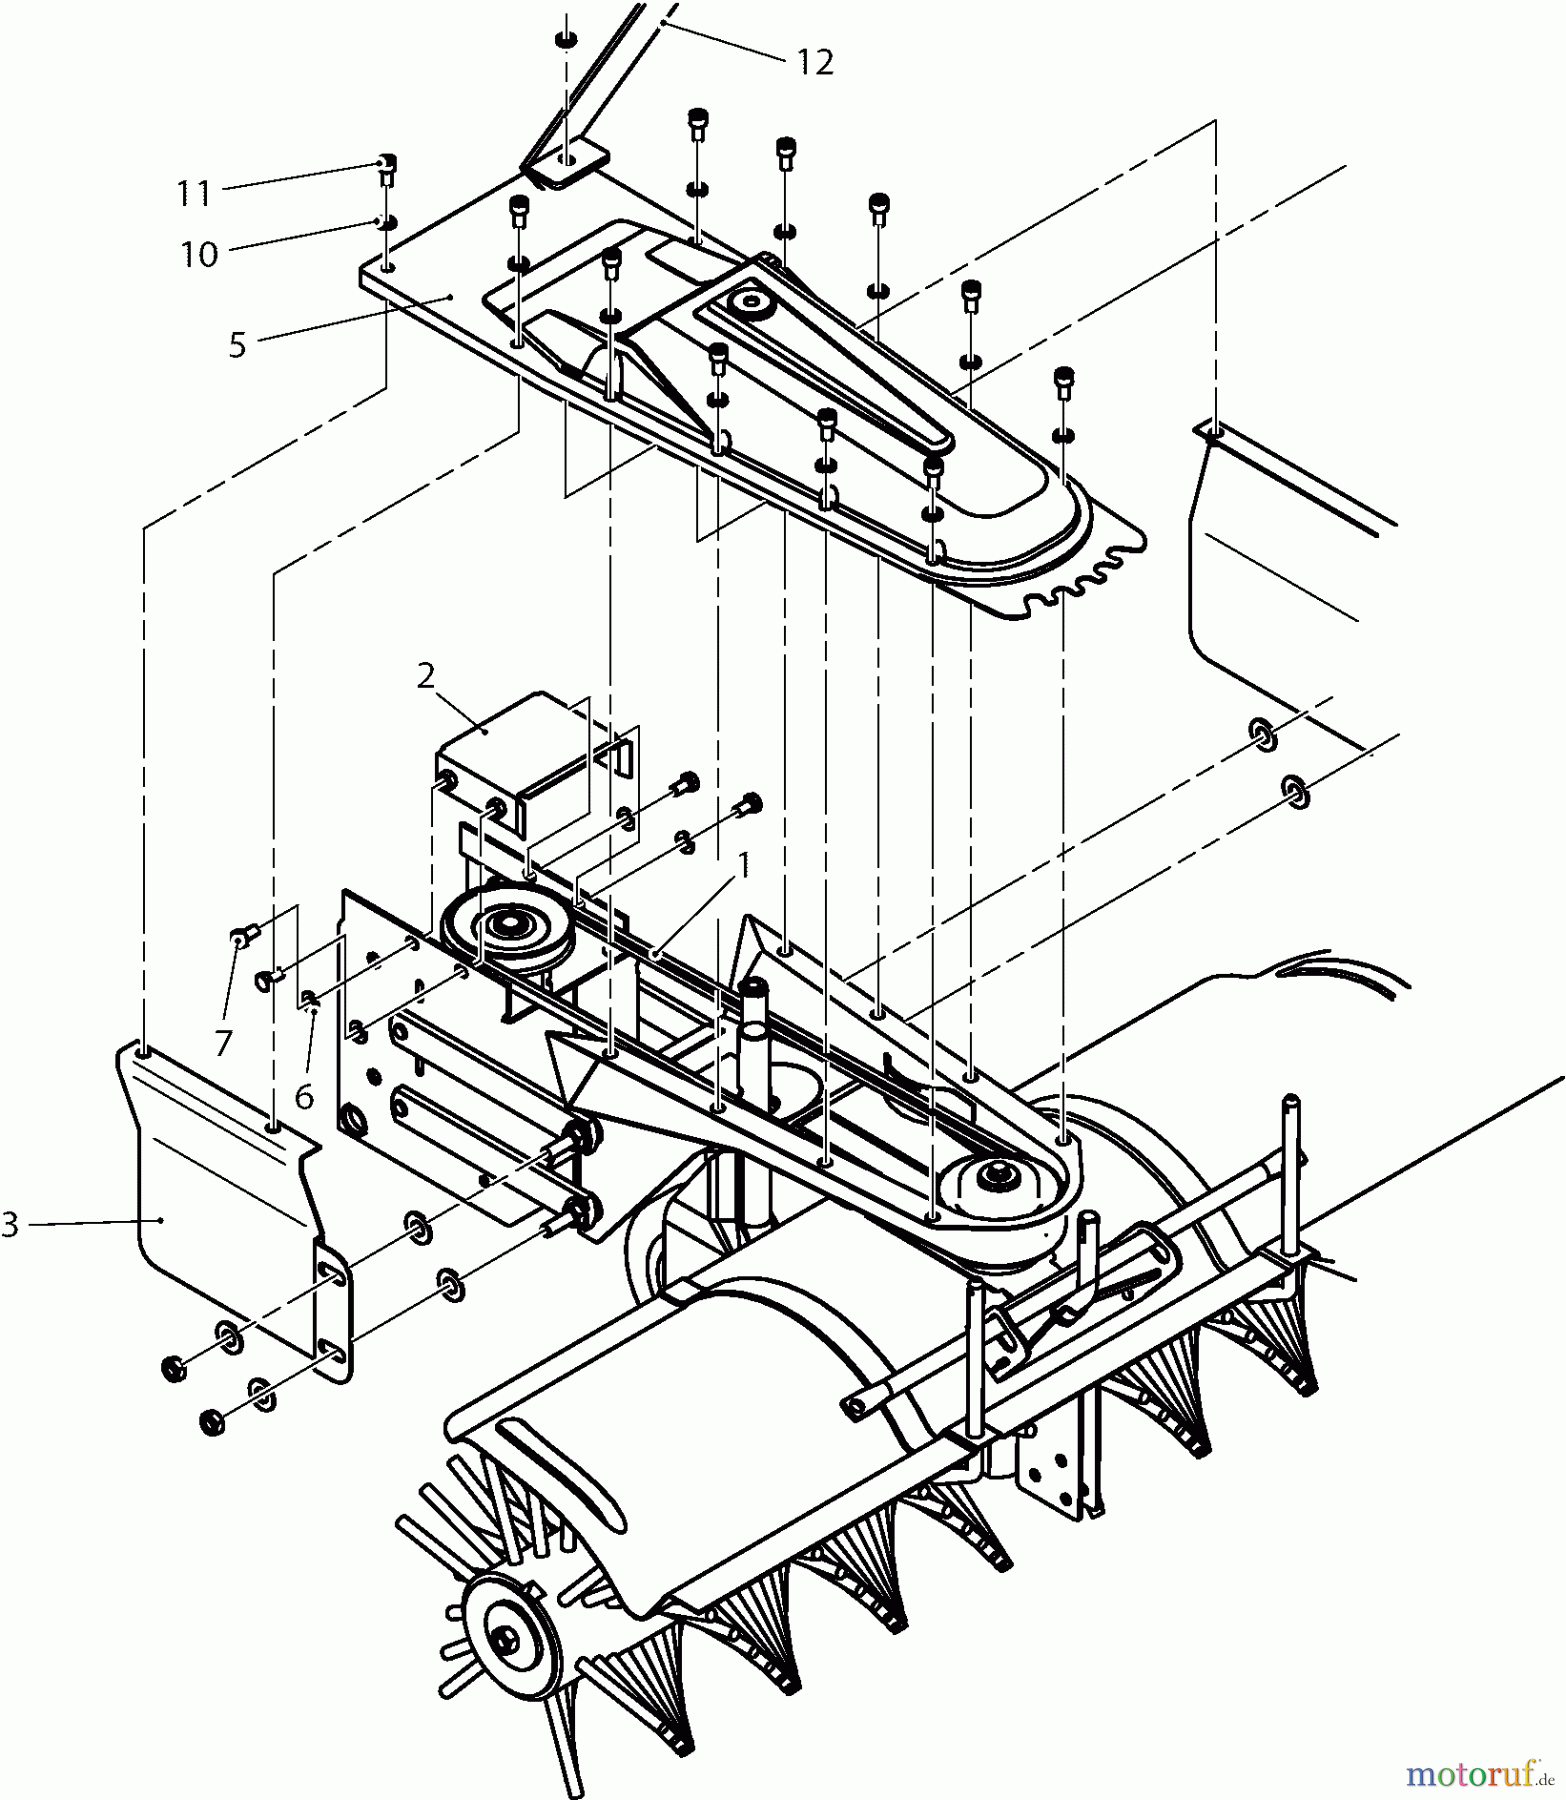  Dolmar Rasentraktoren Zubehör RS-120, TA-250, TK-420, TK-520, TS-125 14  TK-420 - Kehrmaschine (Basiswechsler)